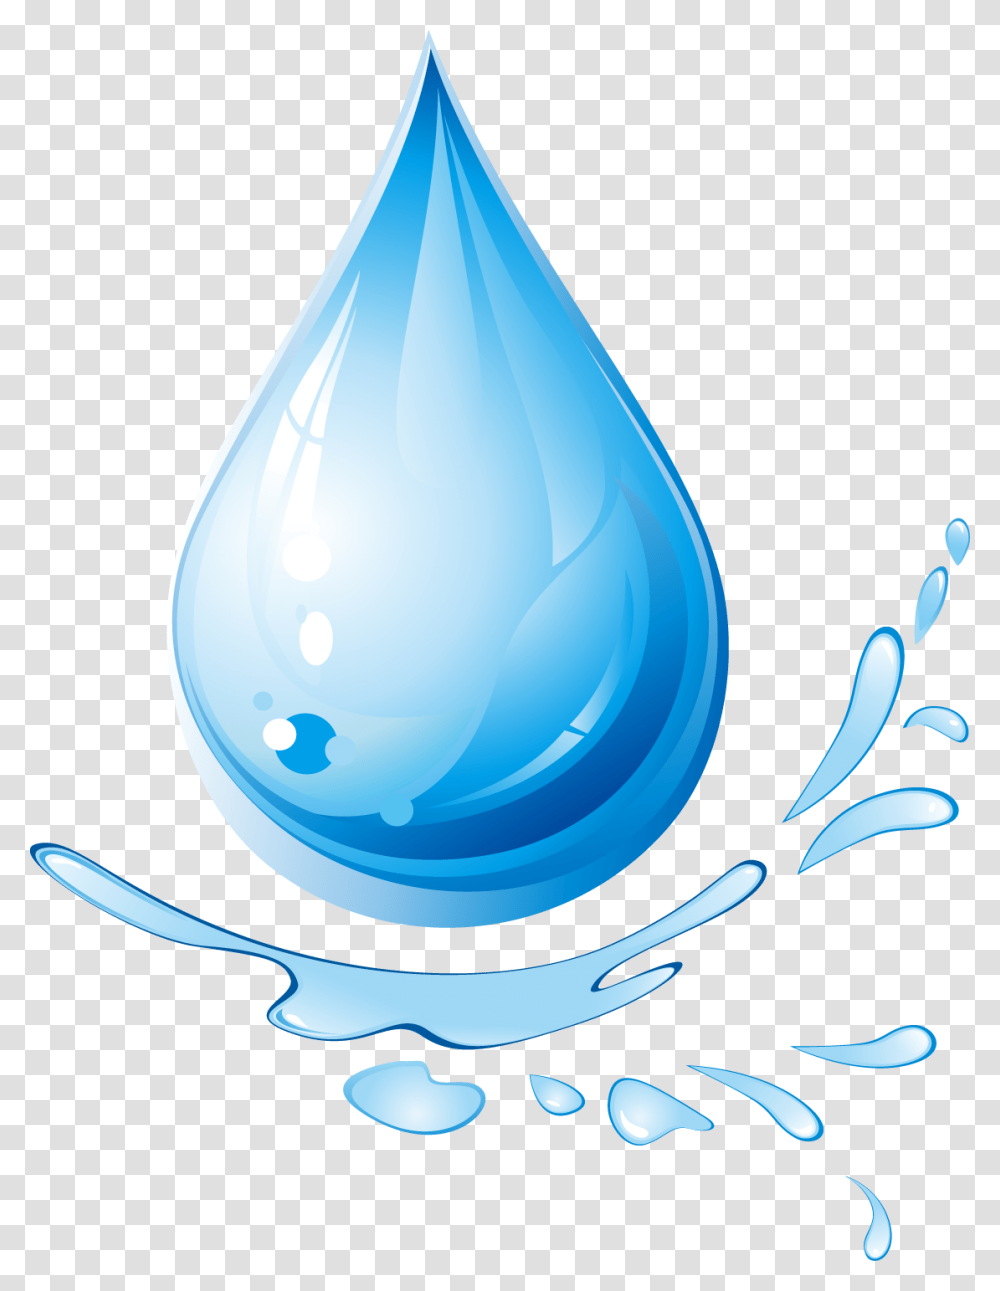 Fine Water Droplets Download Gota De Agua Transparent Png